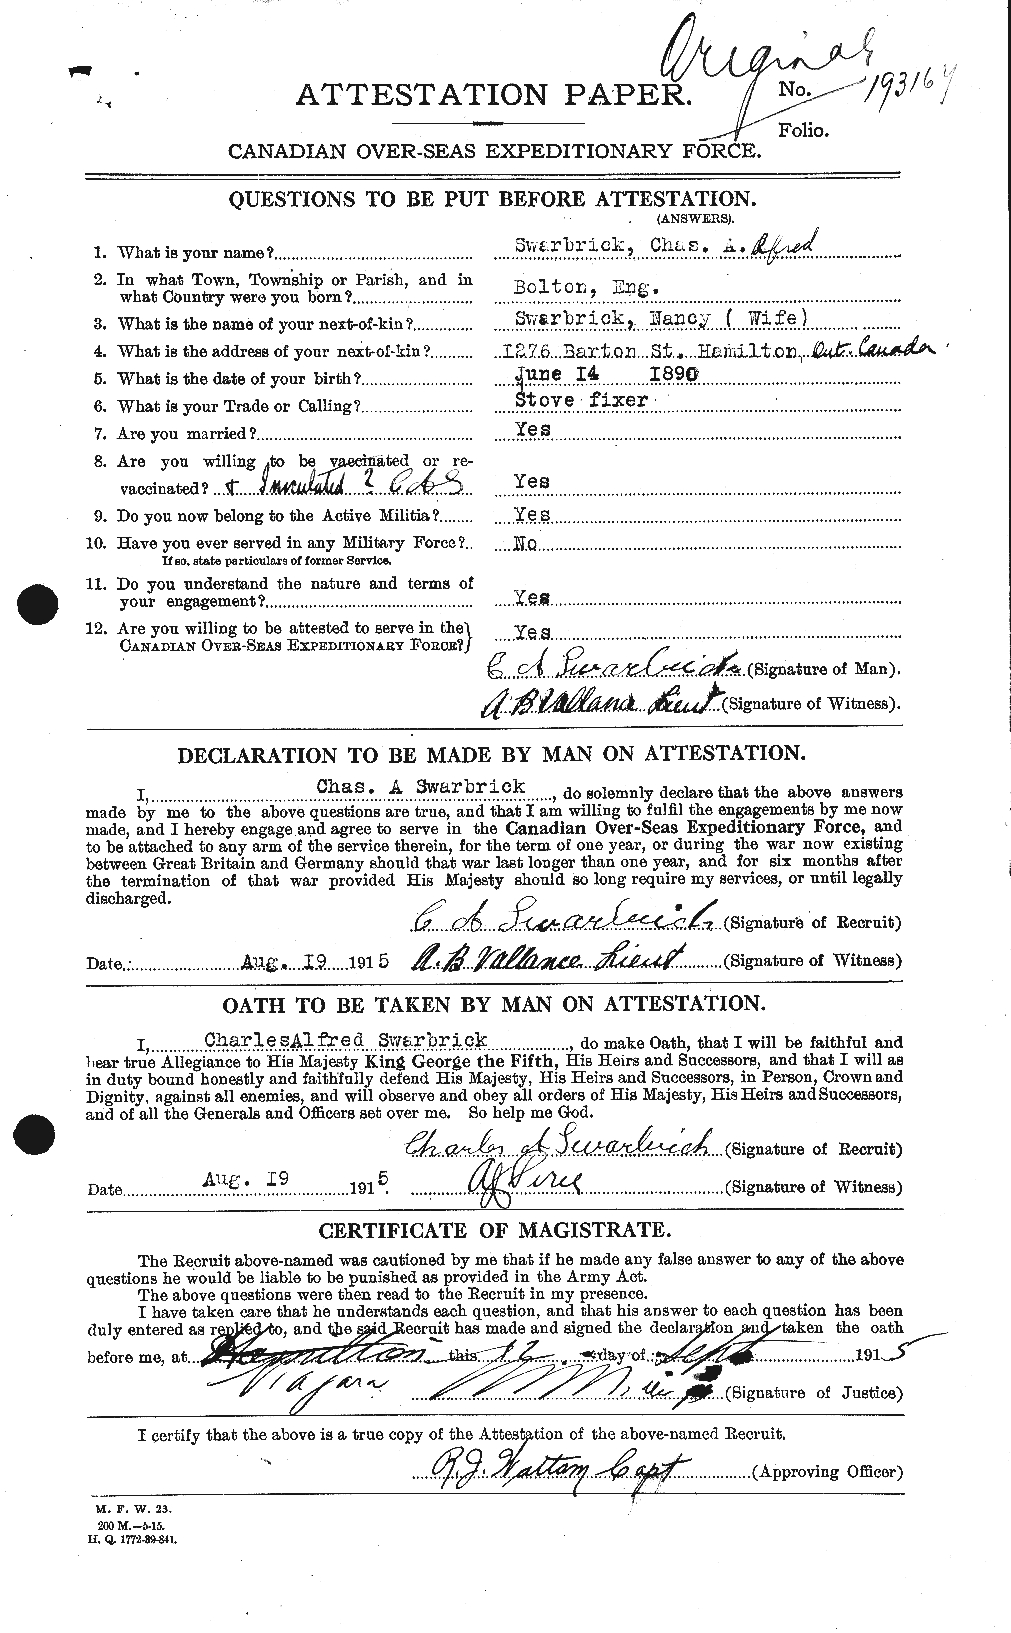 Dossiers du Personnel de la Première Guerre mondiale - CEC 083838a